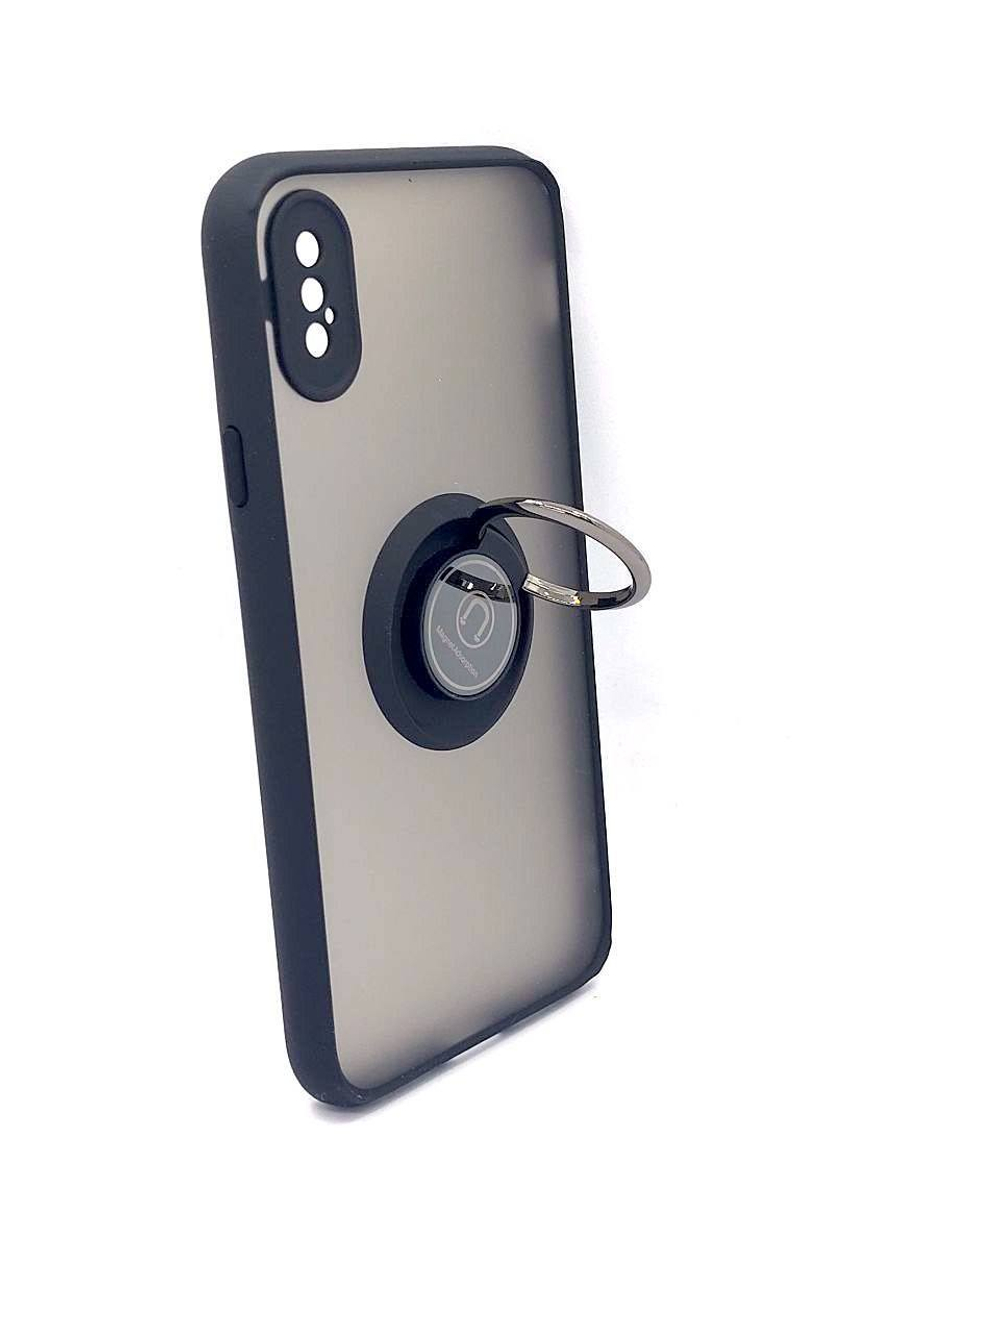 Чехол на iPhone X / XS / айфон, противоударный, с кольцом, подставкой, прозрачный